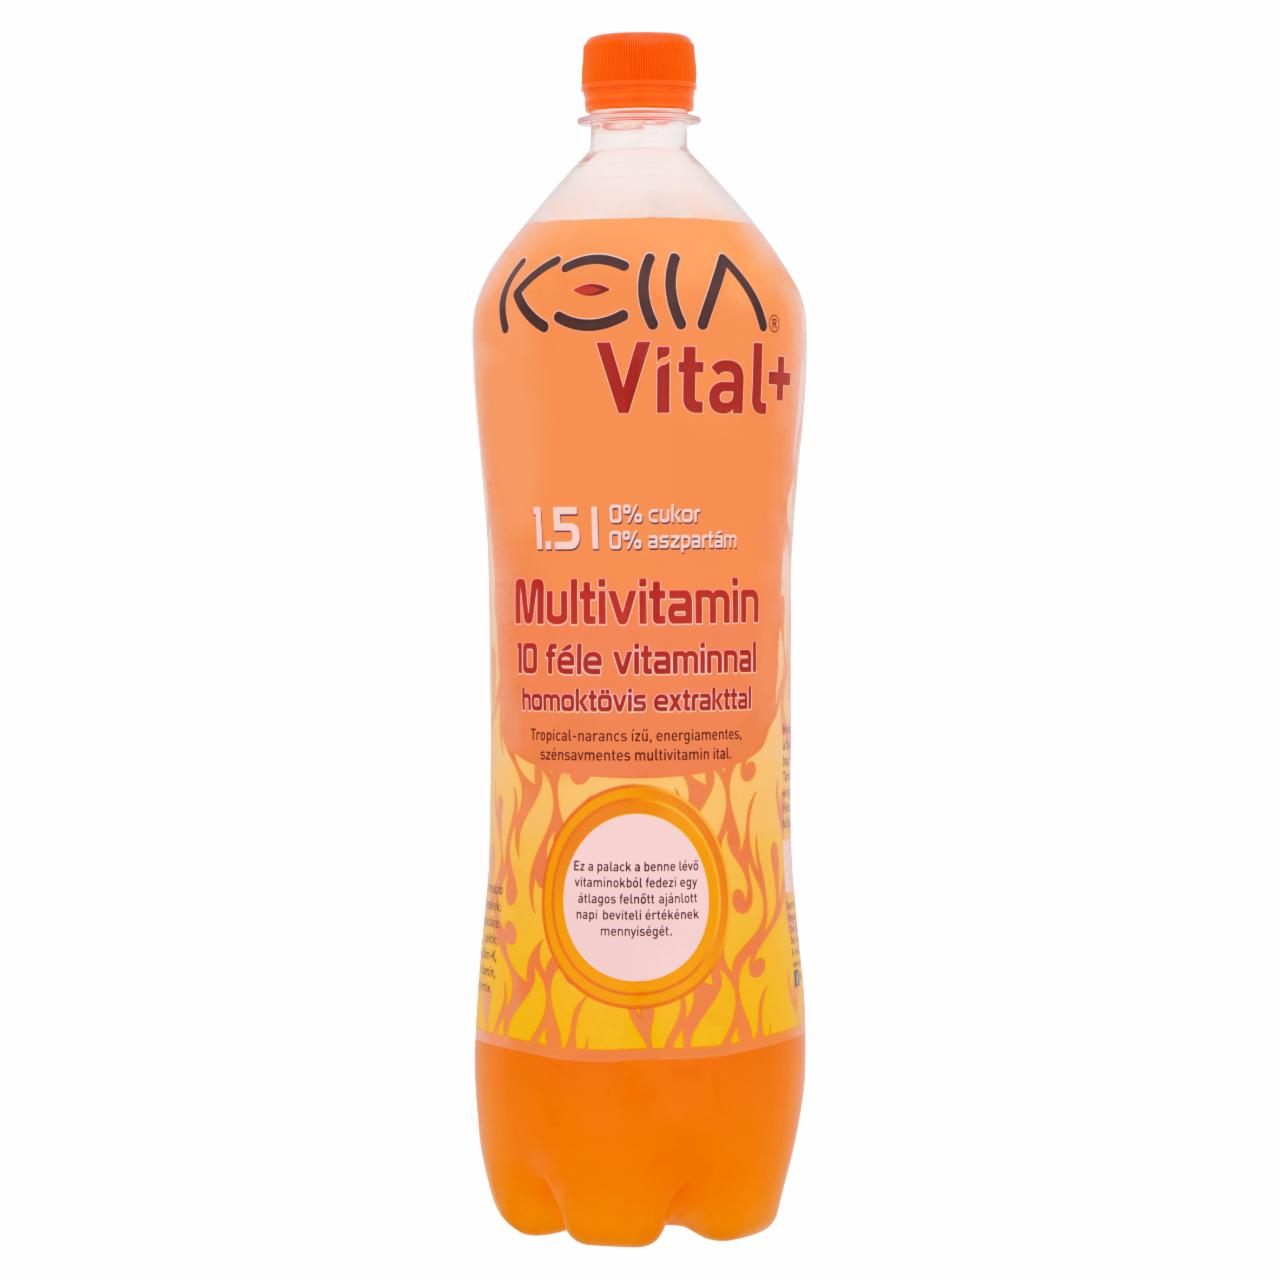 Képek - Kella Vital+ tropical-narancs ízű, energiamentes, szénsavmentes multivitamin ital 1,5 l